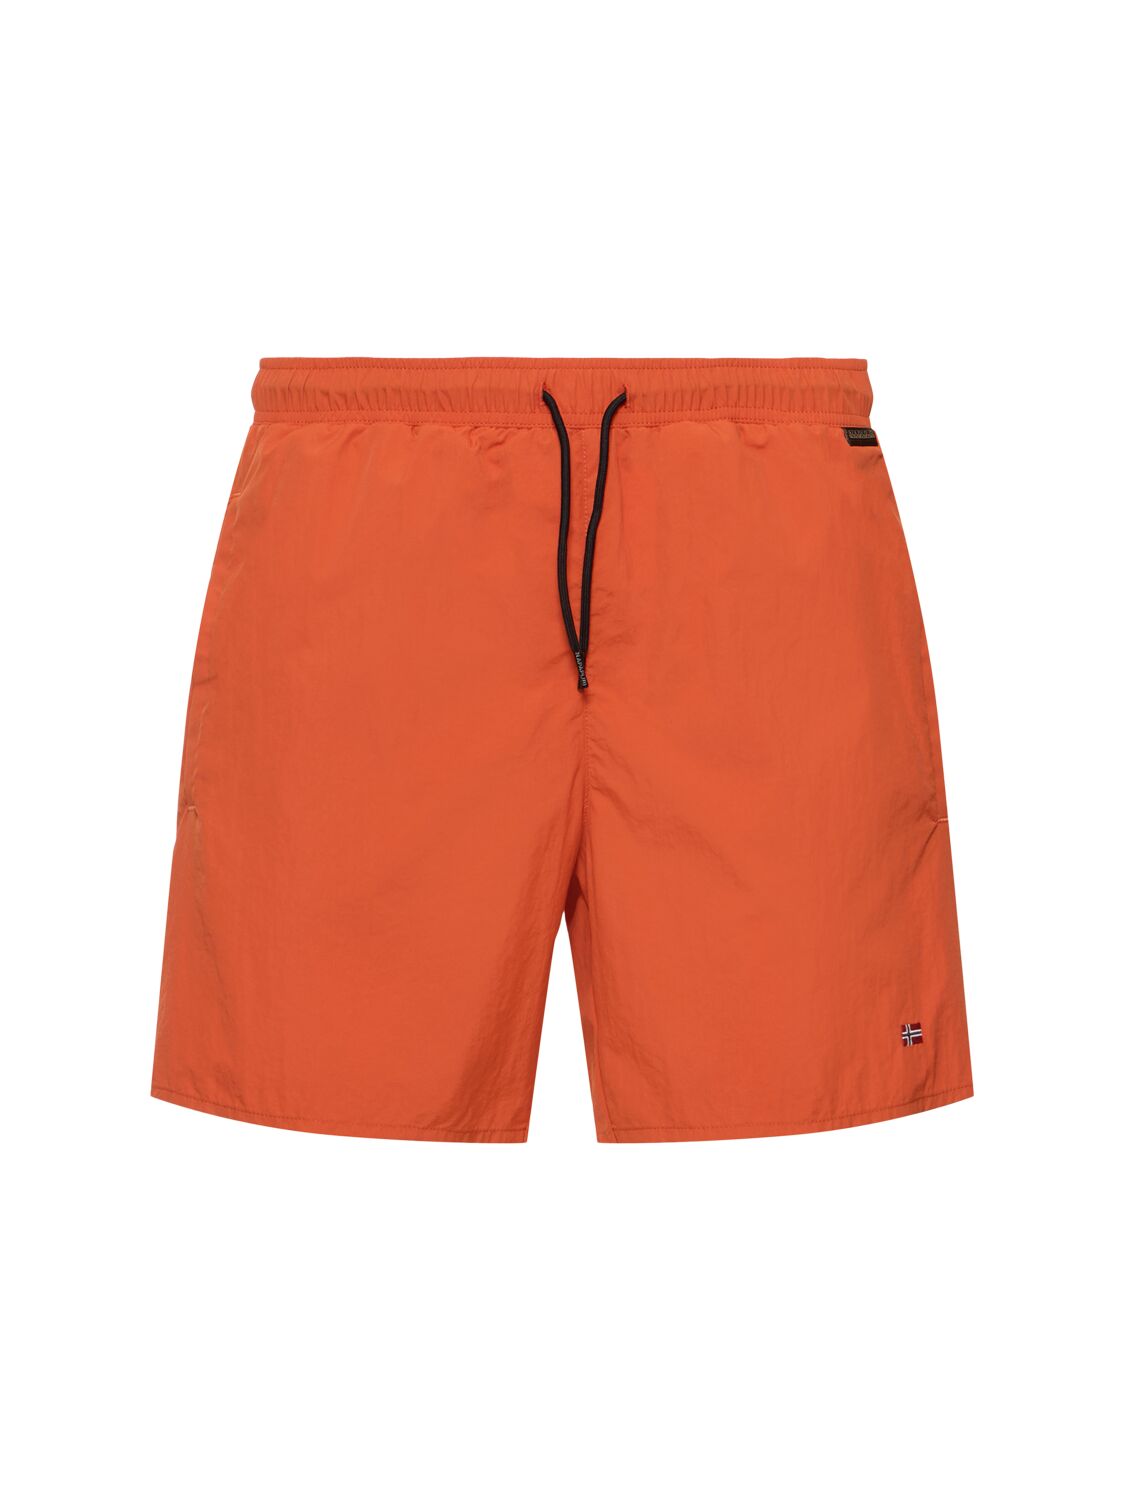 Napapijri V-haldane Tech Swim Shorts In Orange Burnt